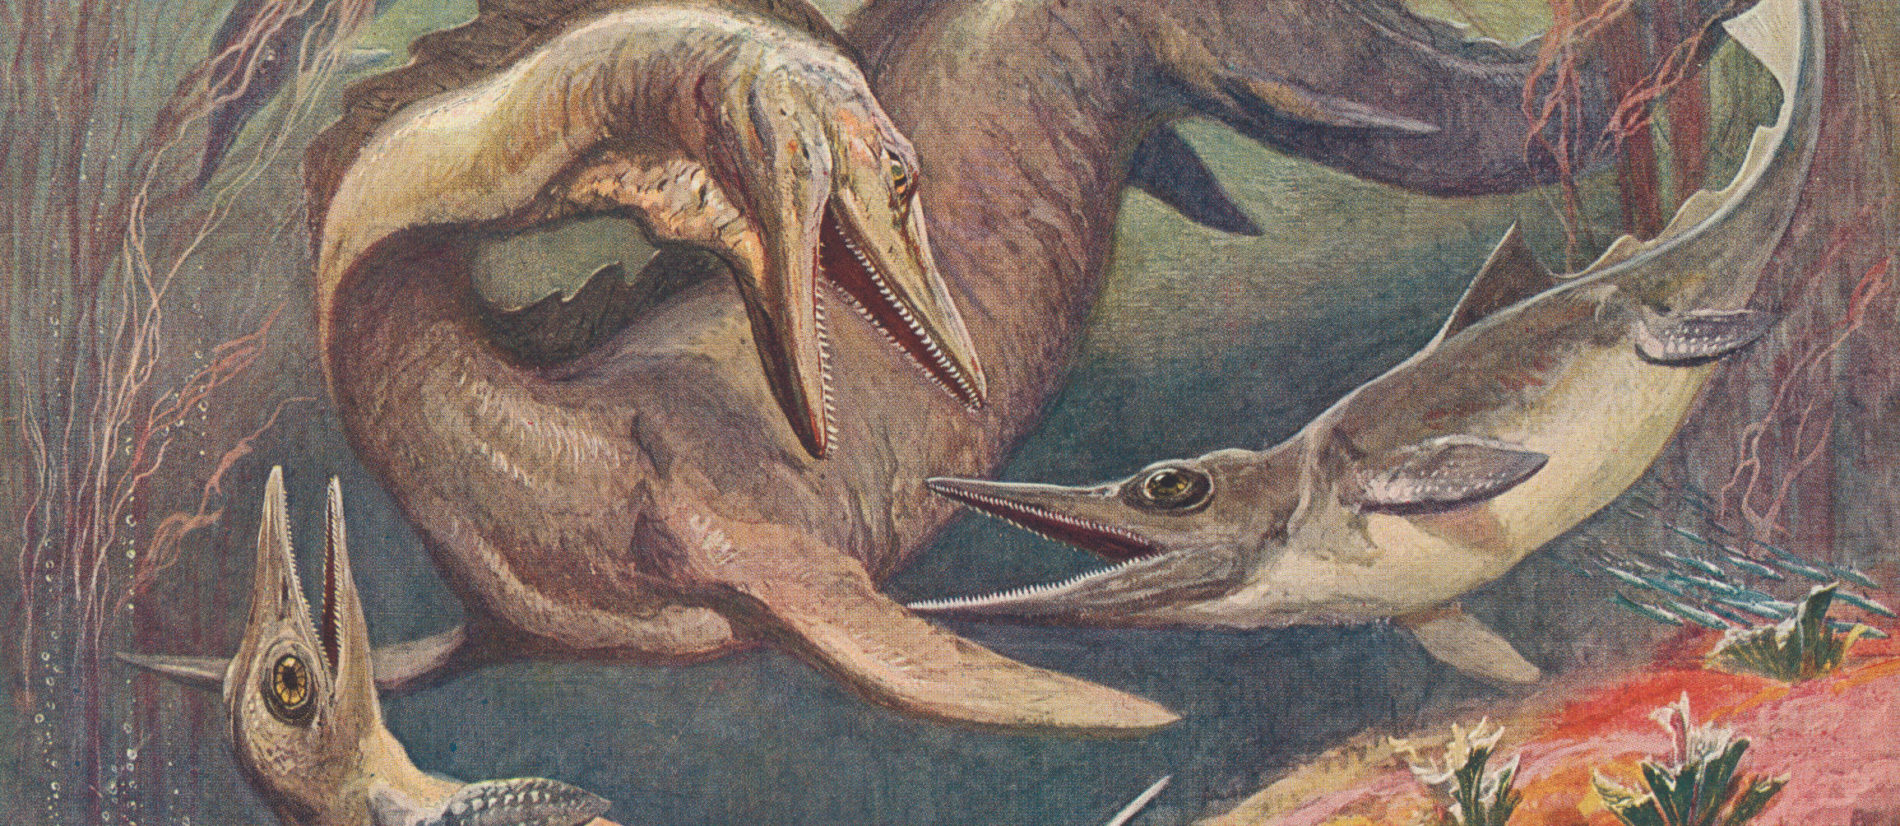 Ихтиозавр первичноводное. Ихтиозавры Юрского периода. Морские динозавры Ихтиозавр. Ихтиозавр и Плезиозавр. Ящер Ихтиозавр.